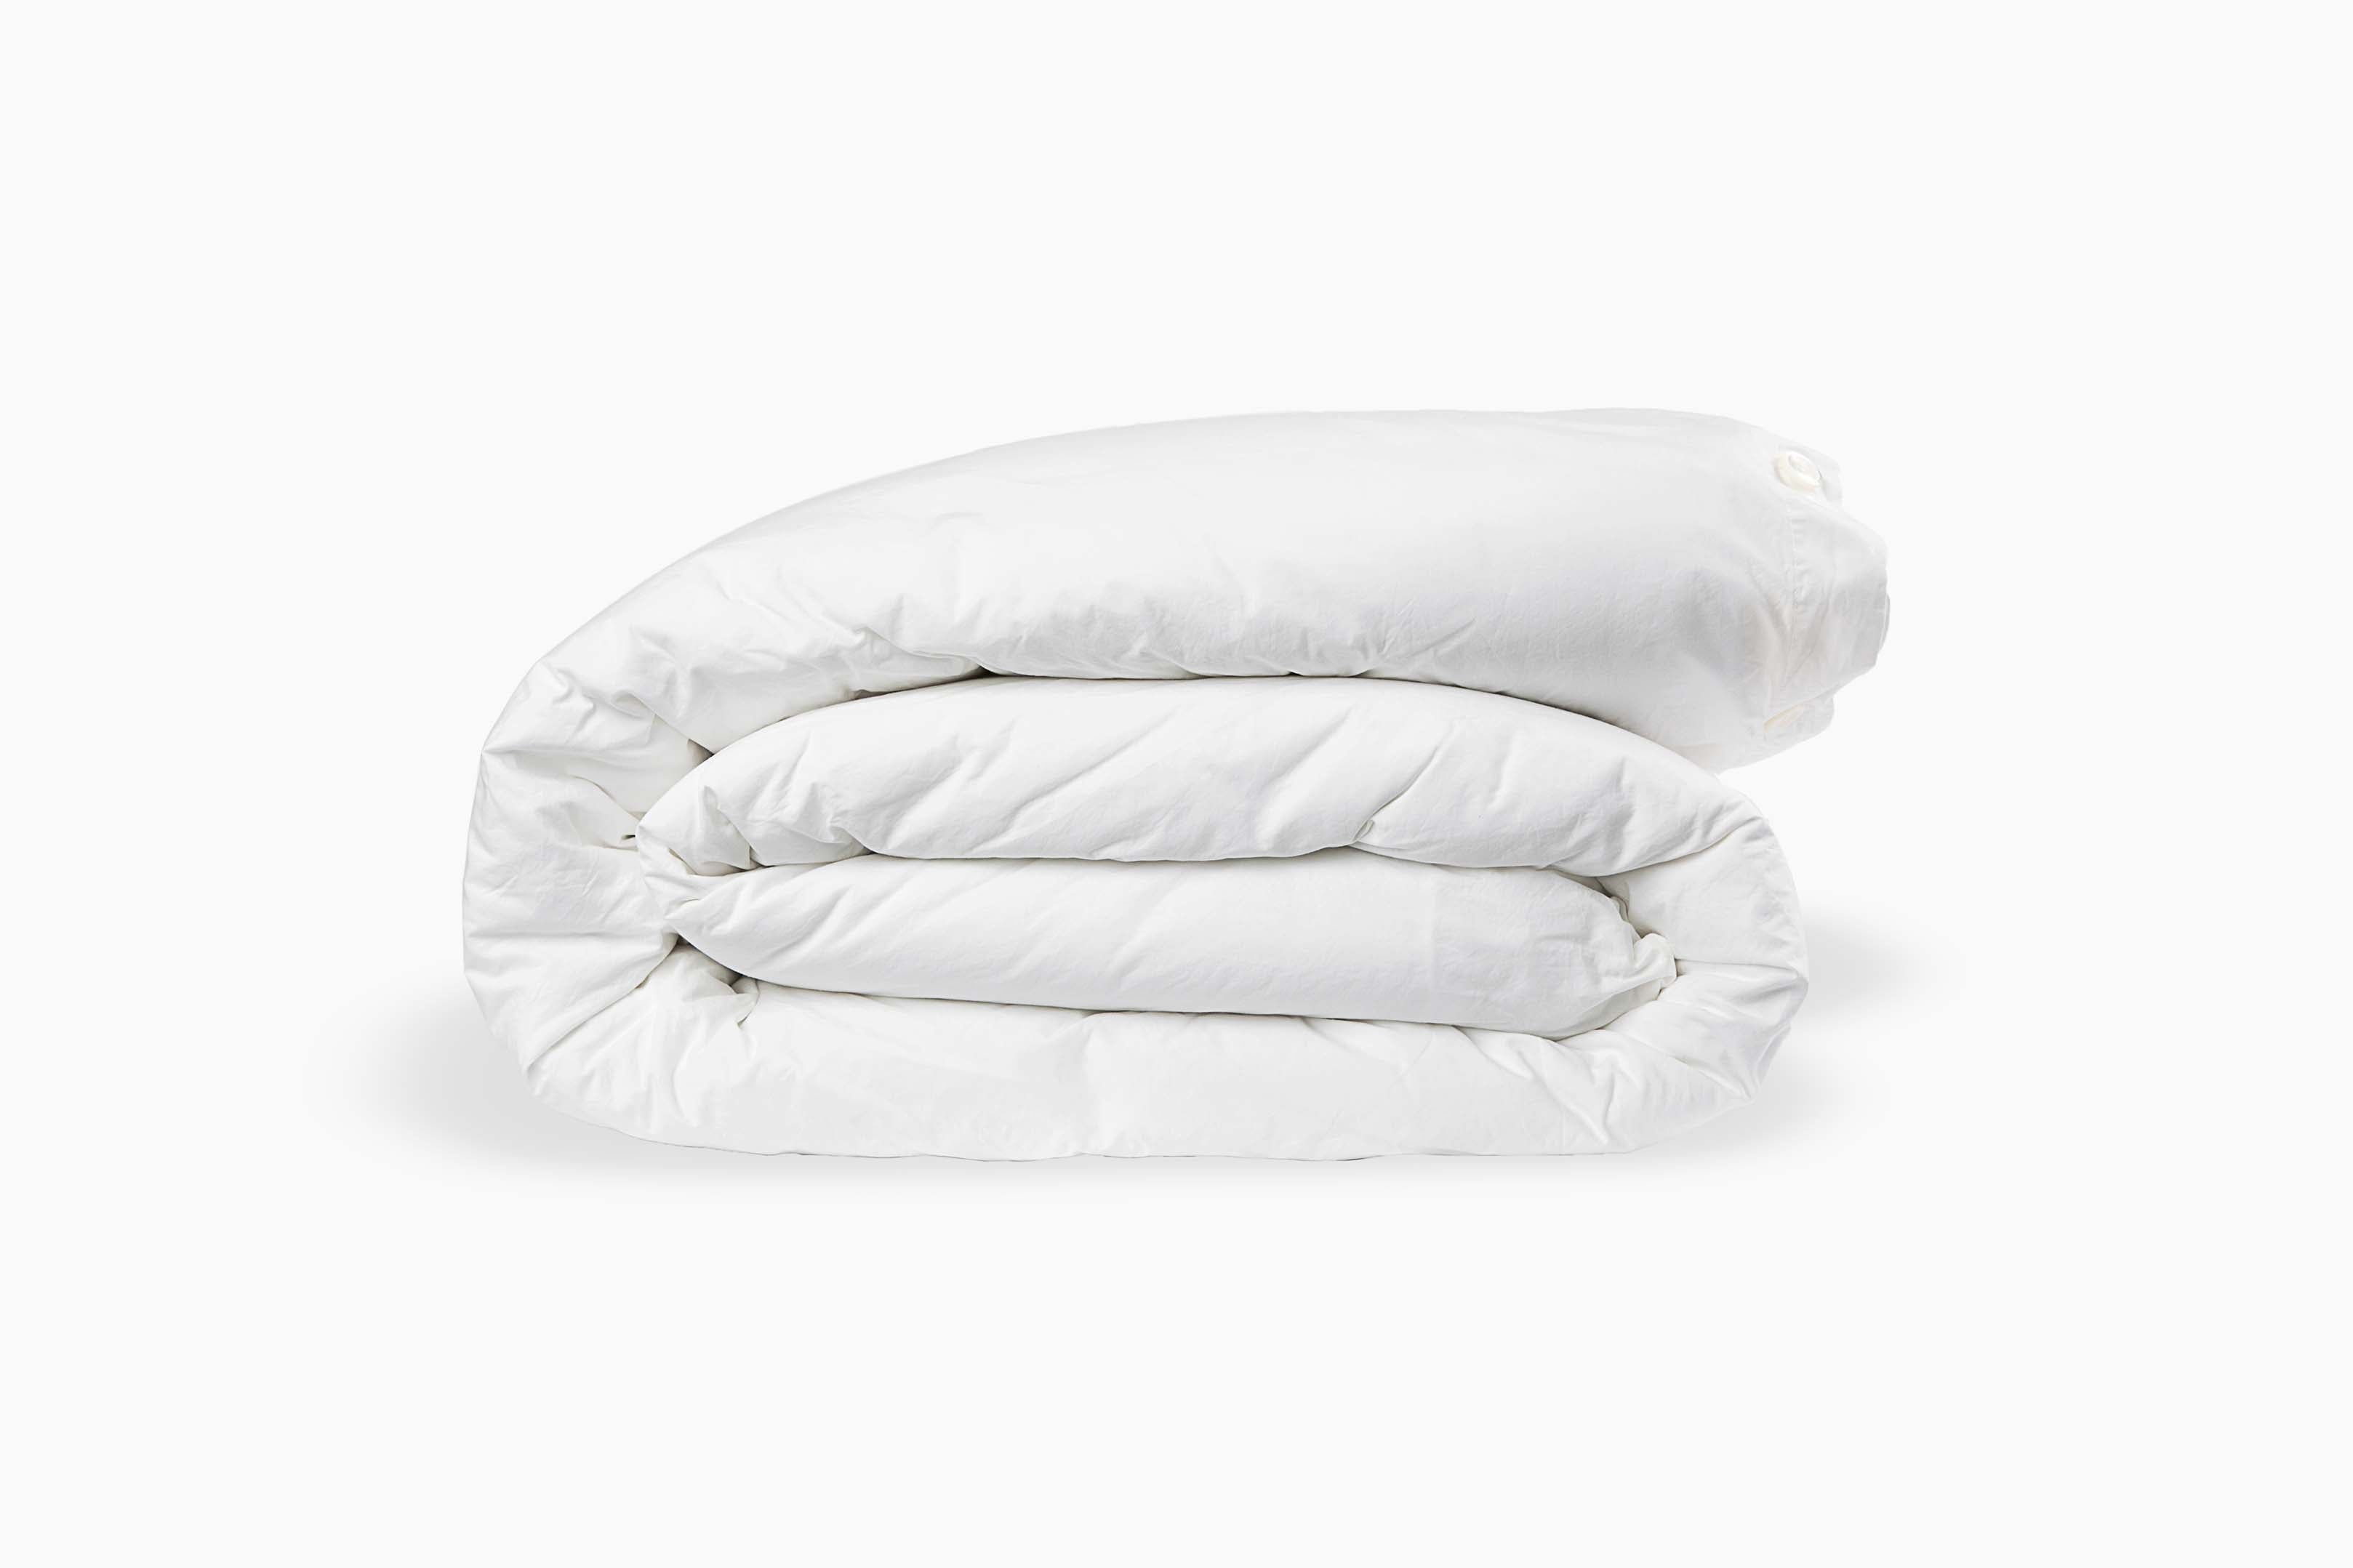 MXIU Pillow Top Mattress Cover Long Sleeve Crop Top Swimsuit Top